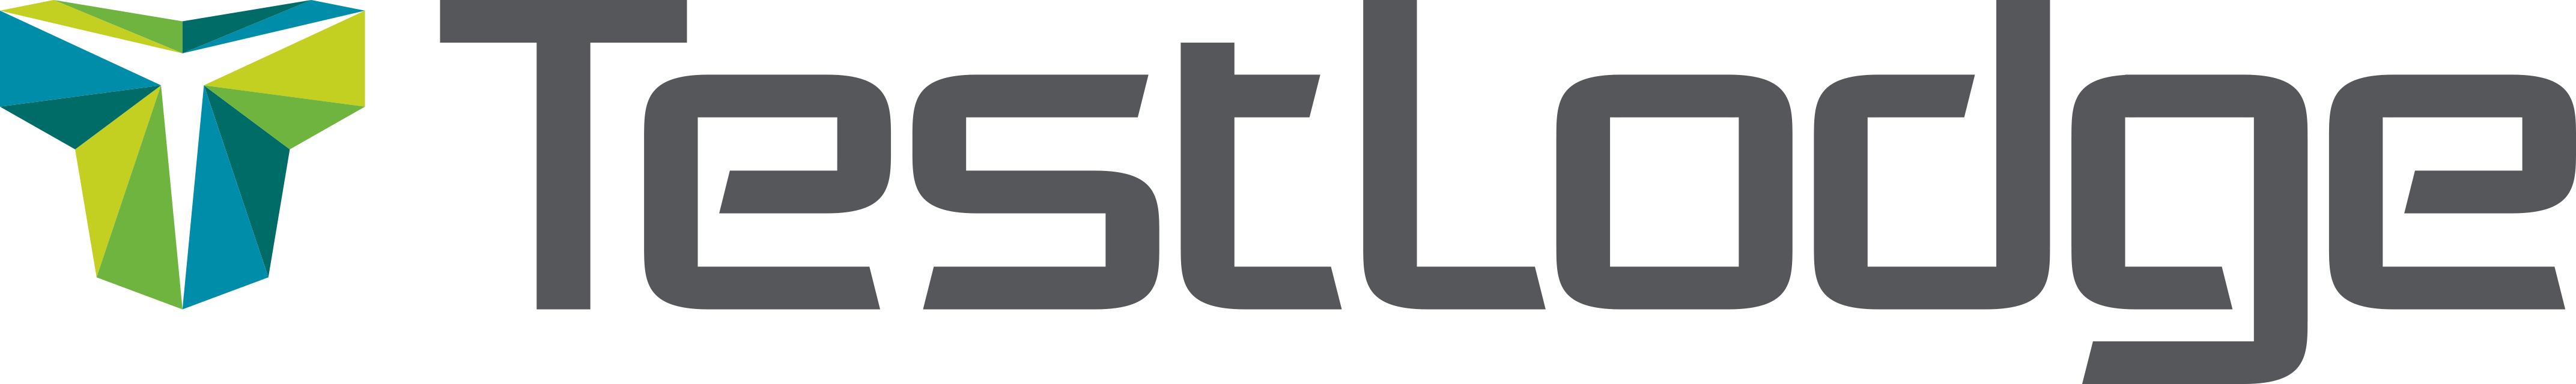 TestLodge logo